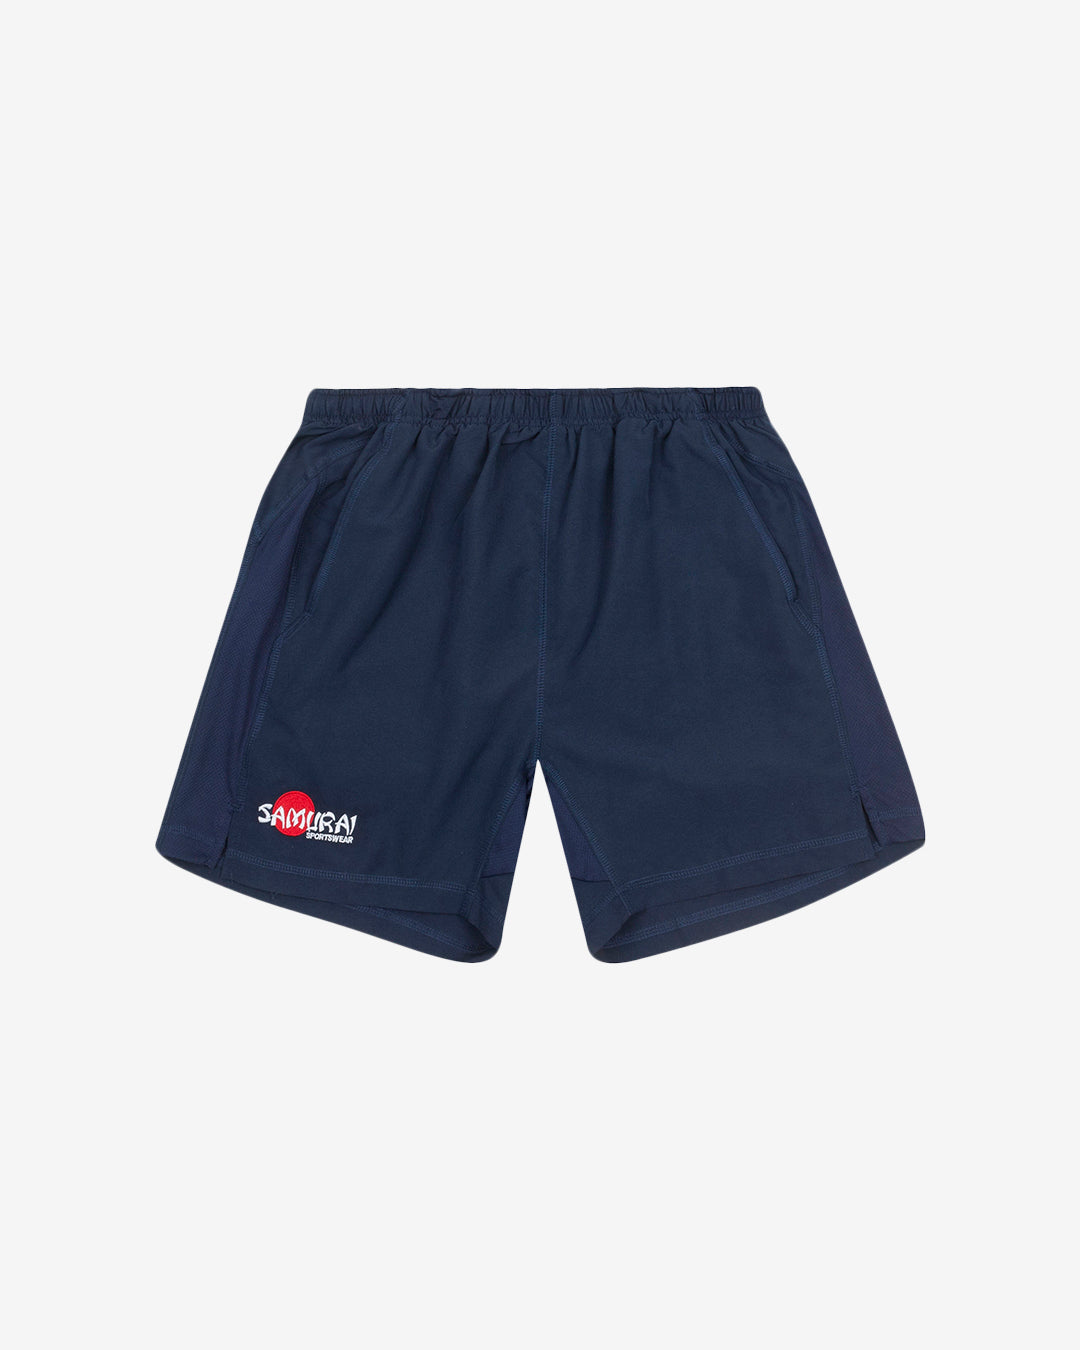 Hc: 9606 - Junior Clipper Shorts - Navy